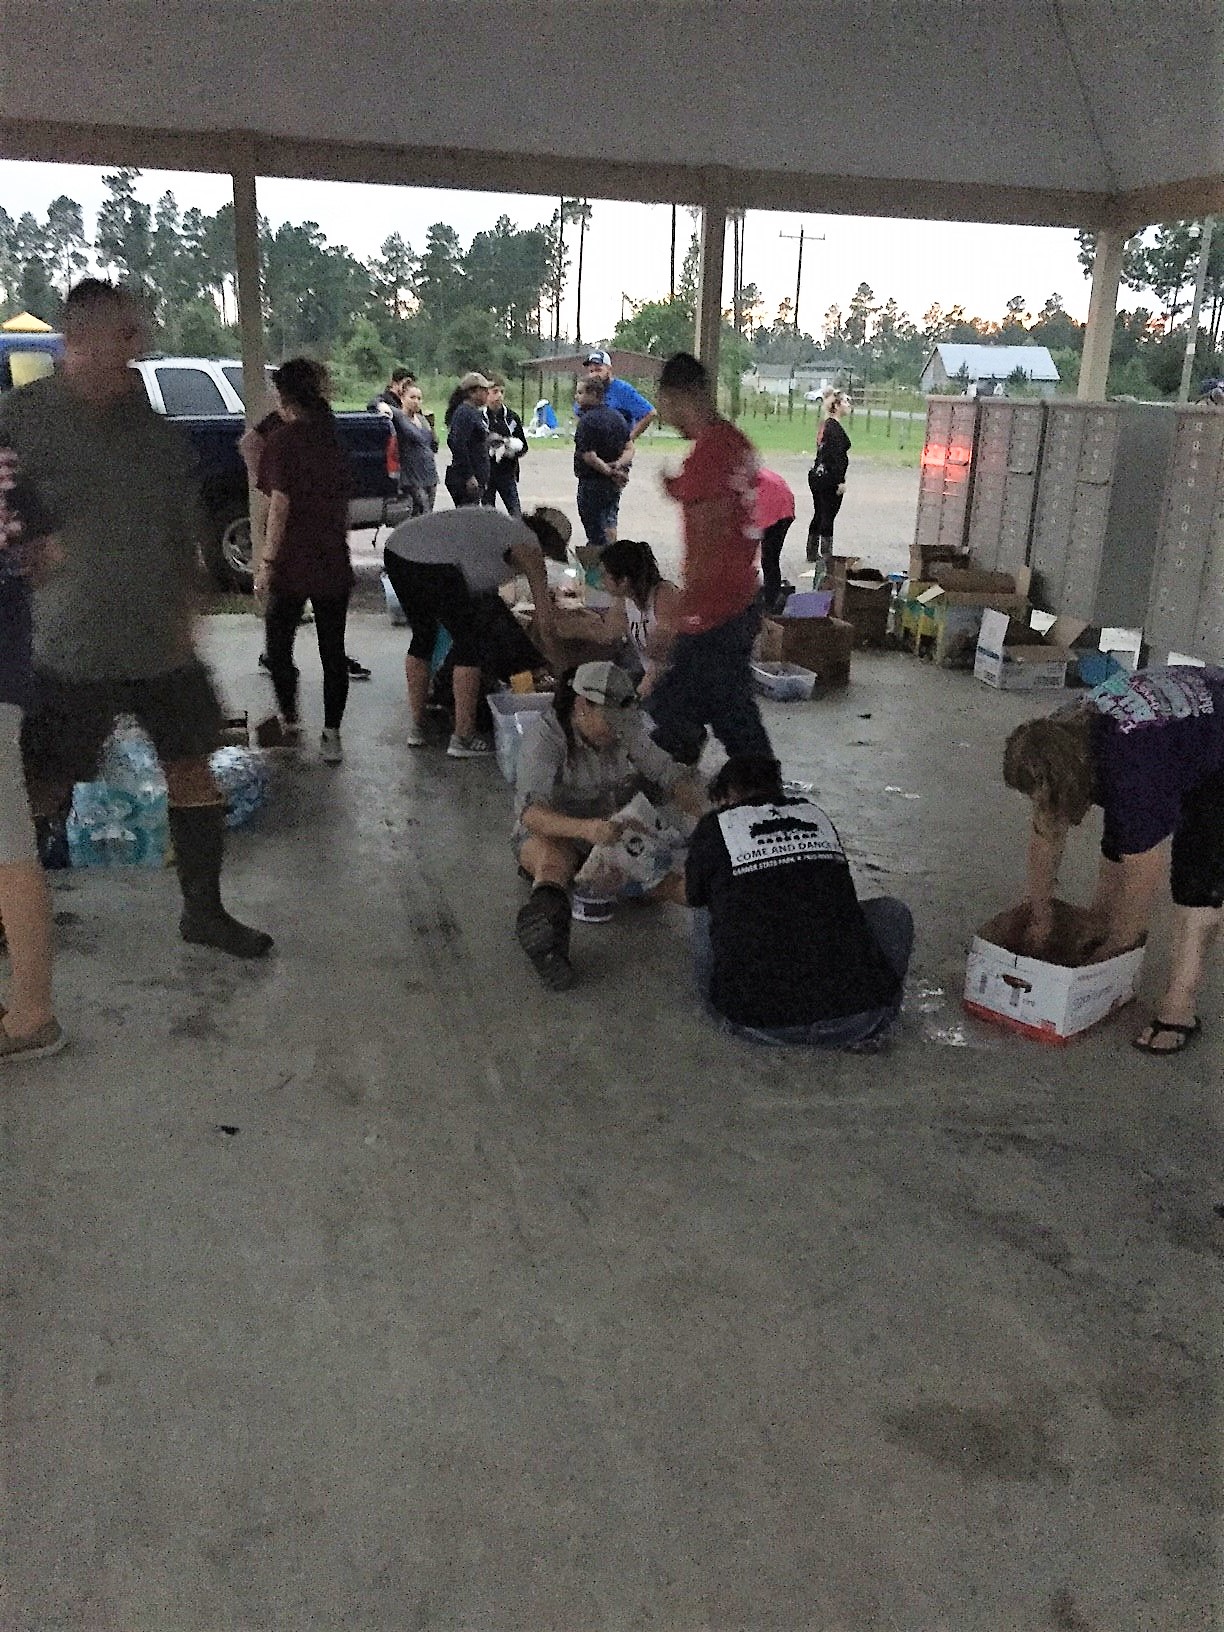   Once through the flood waters, volunteers begin distributing supplies.